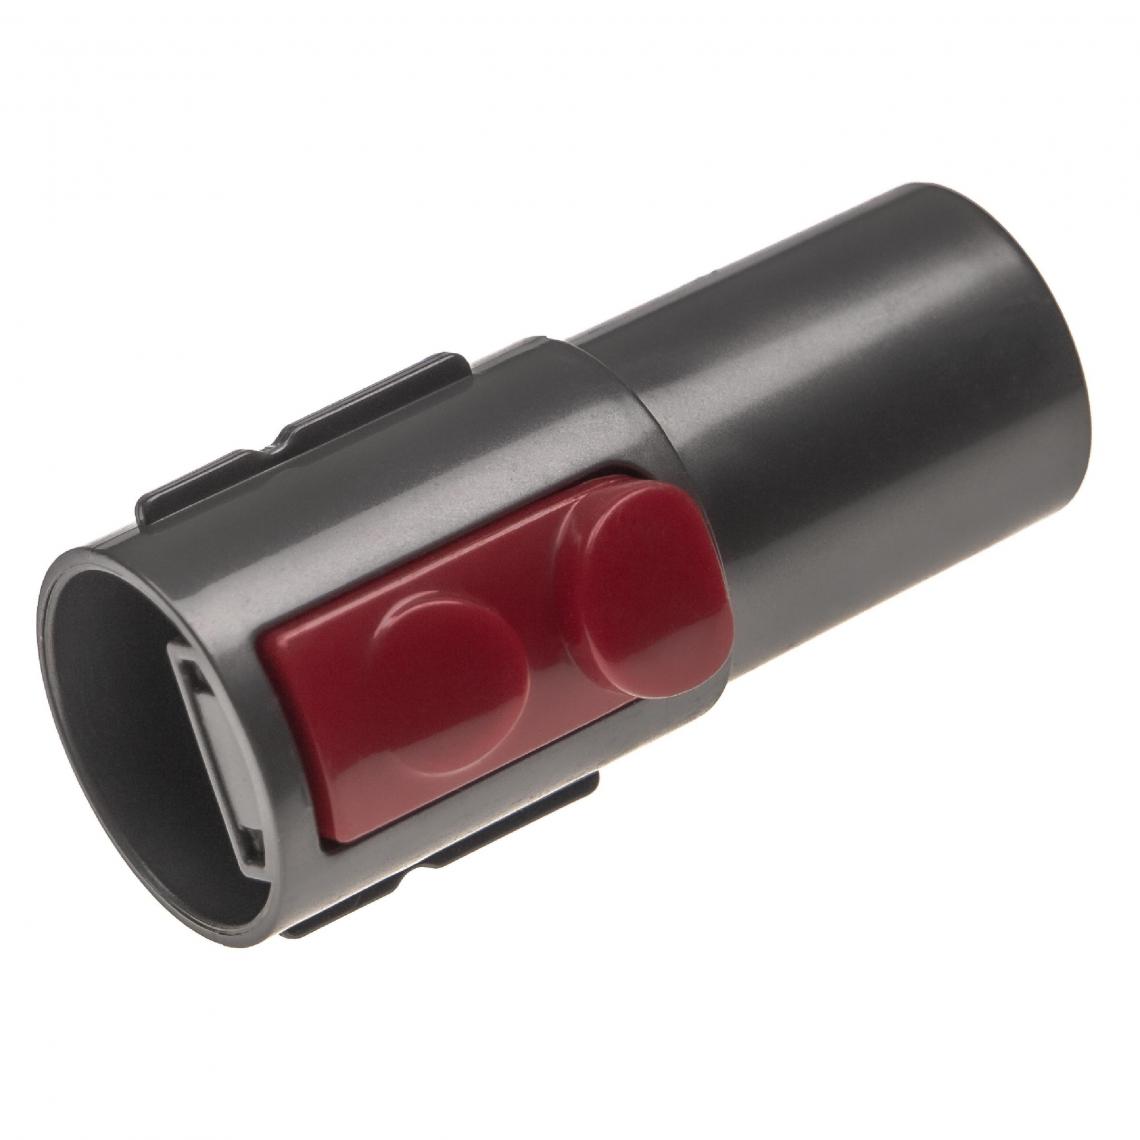 Vhbw - vhbw Adaptateur pour aspirateur connecteur de marque à raccord 32mm compatible avec Dyson V7, V8 - noir / rouge, plastique - Accessoire entretien des sols